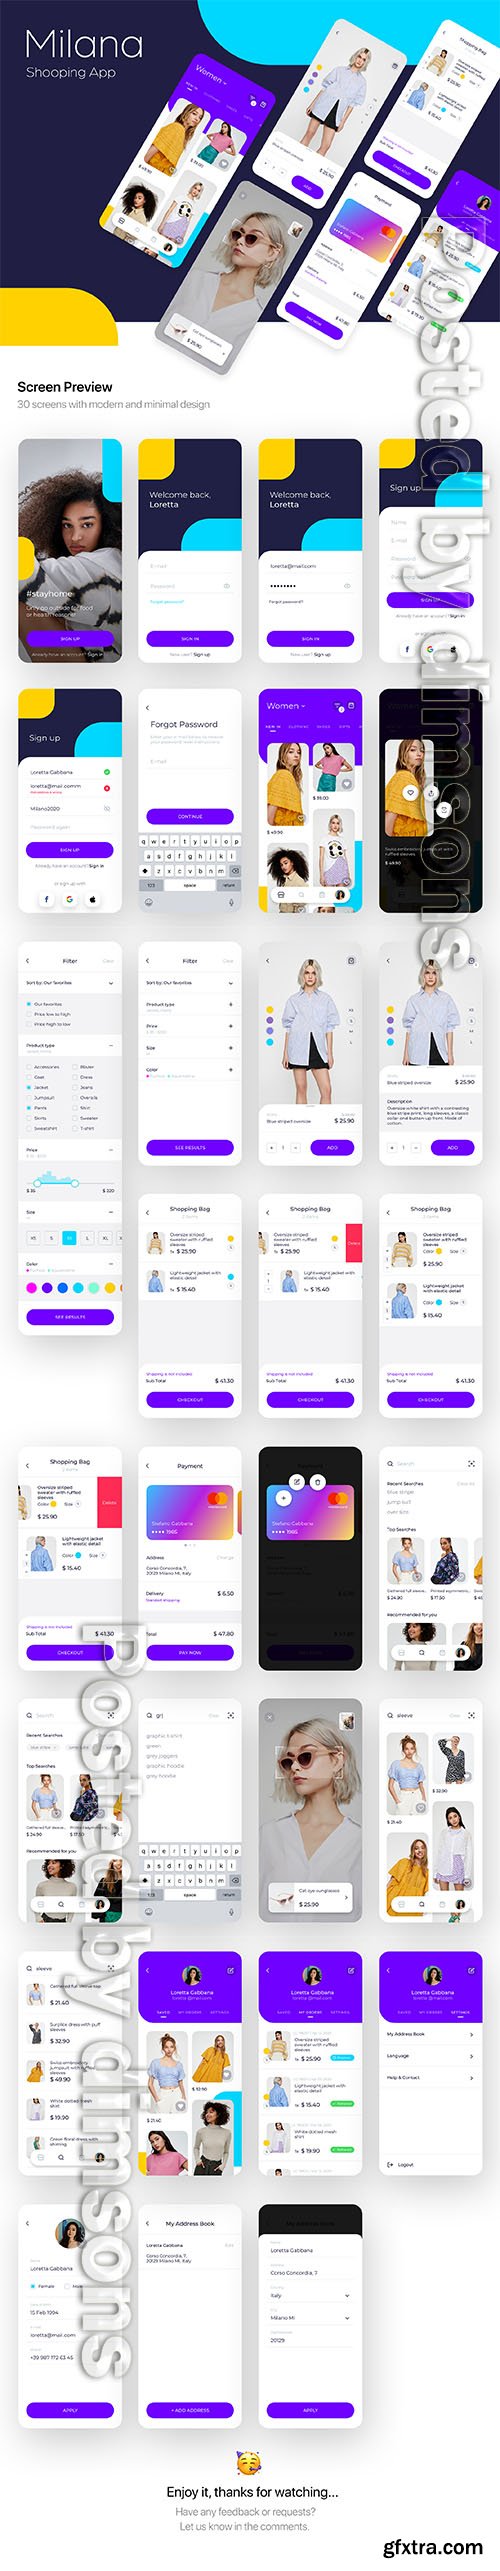 Milana Shopping App UI Kit